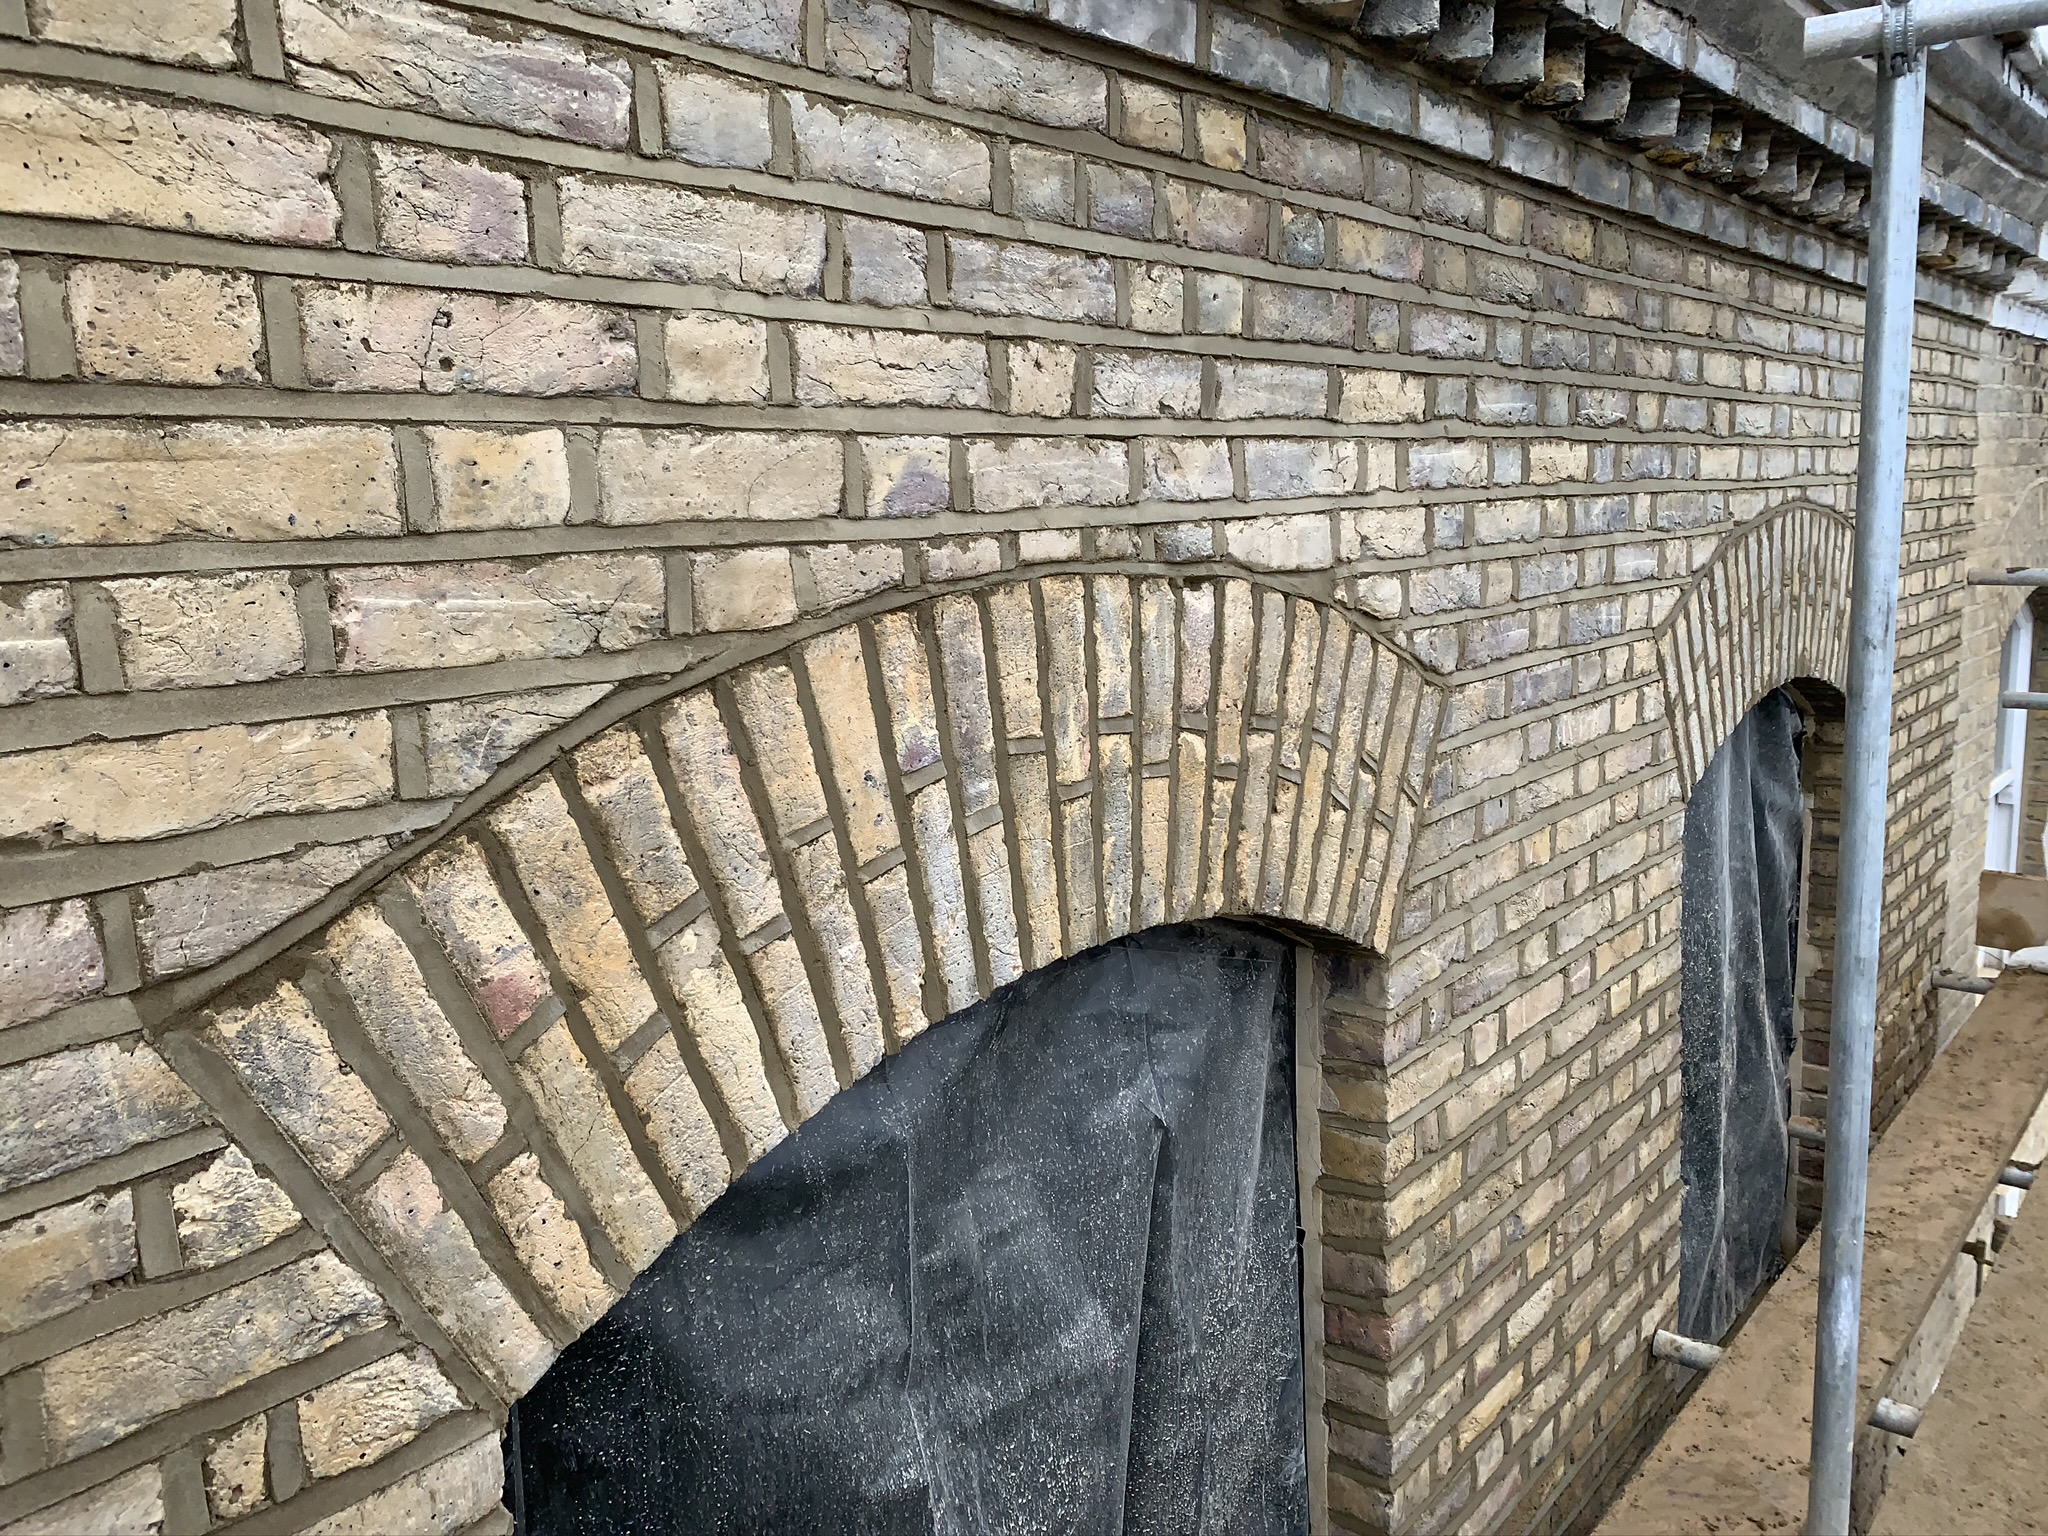 Brick Laying & Masonry London - London Elite Trades